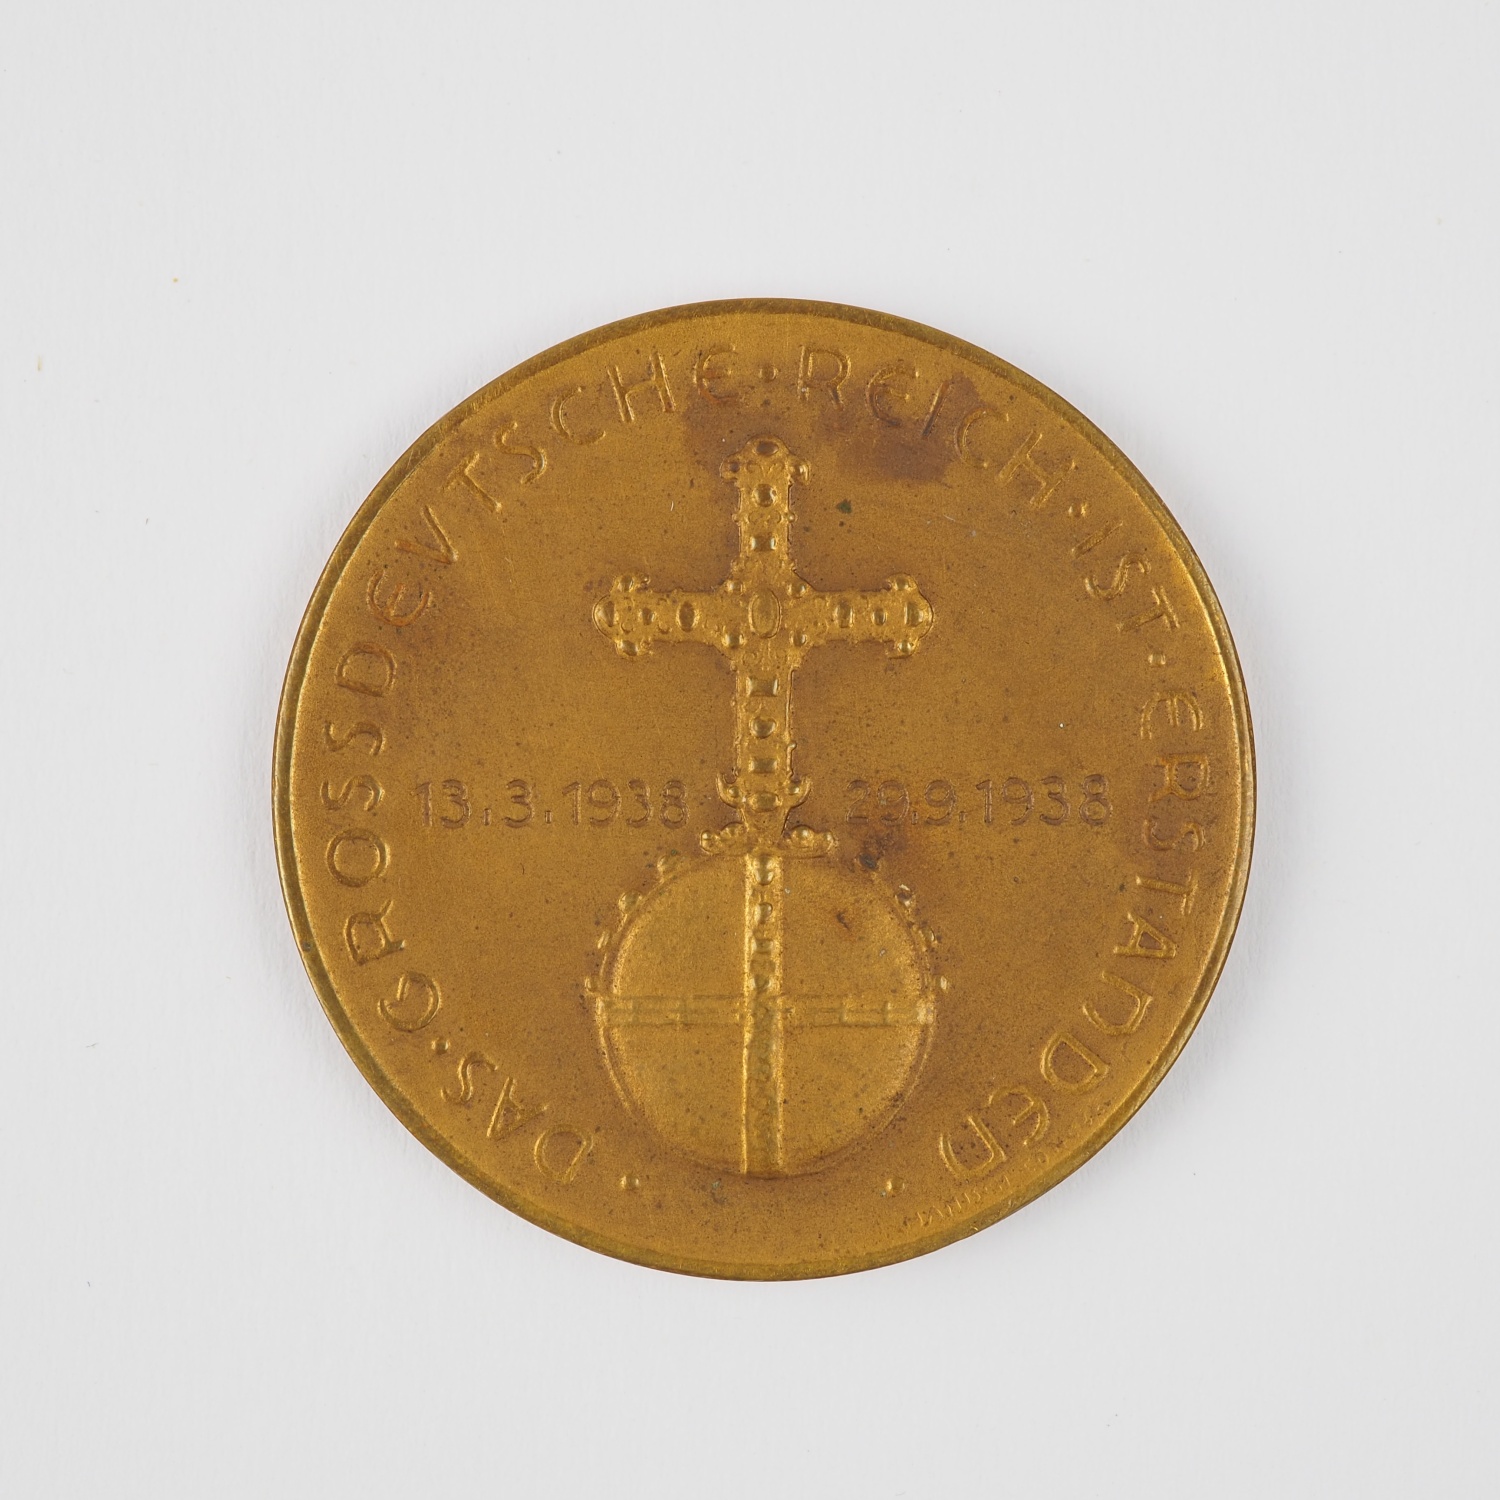 Third Reich: Bronze medal Adolf Hitler, 1938 Munich Agreement - Image 3 of 3